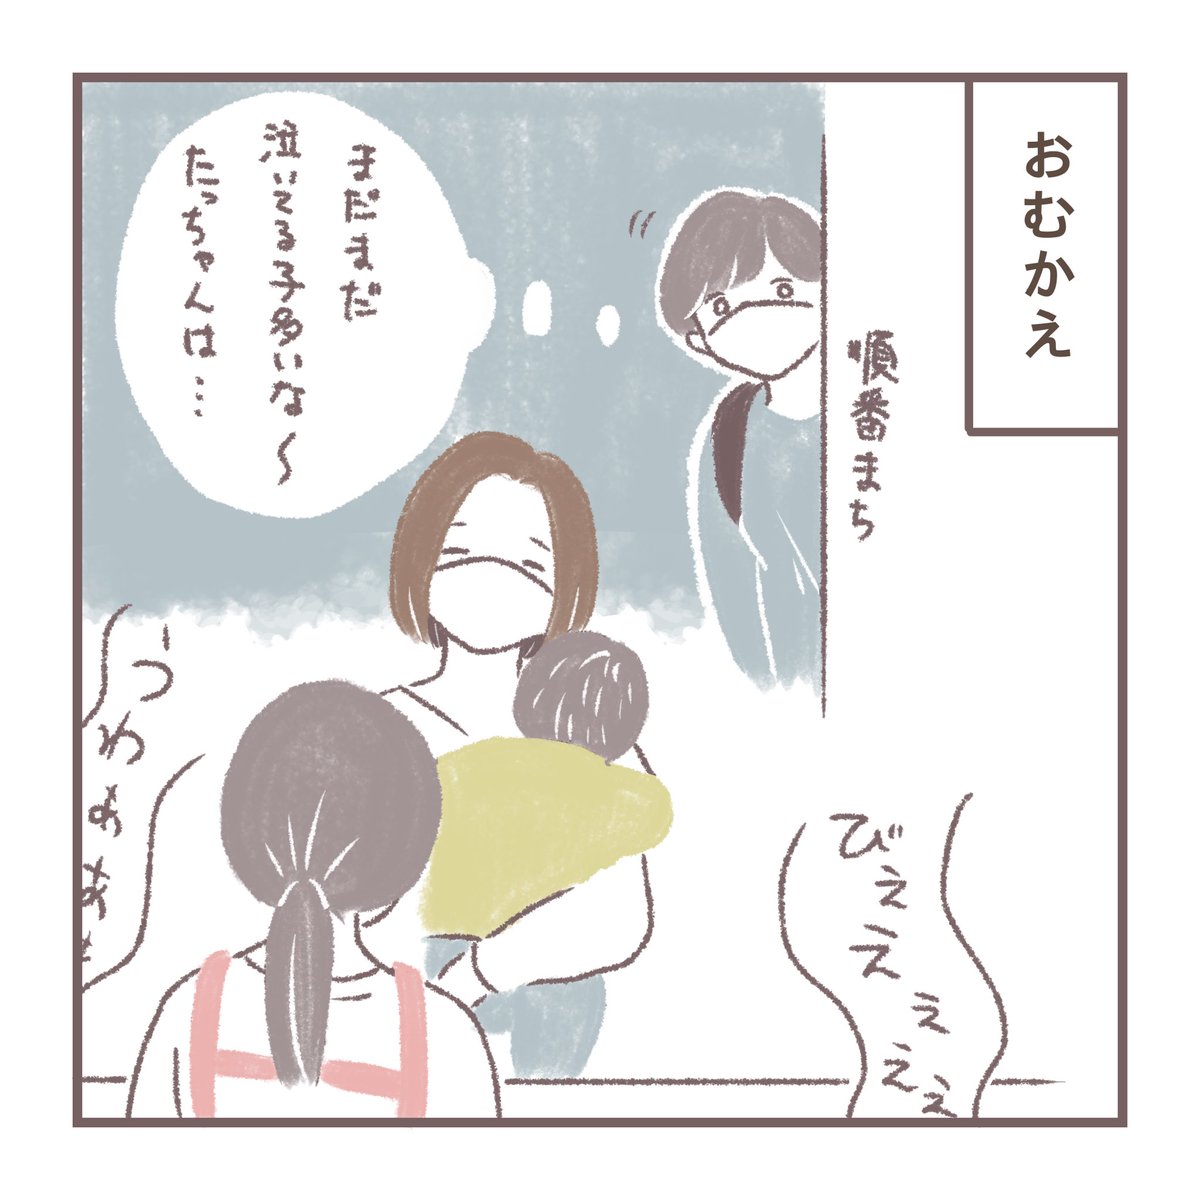 慣らし保育初日 1/2
#育児絵日記 #育児漫画 